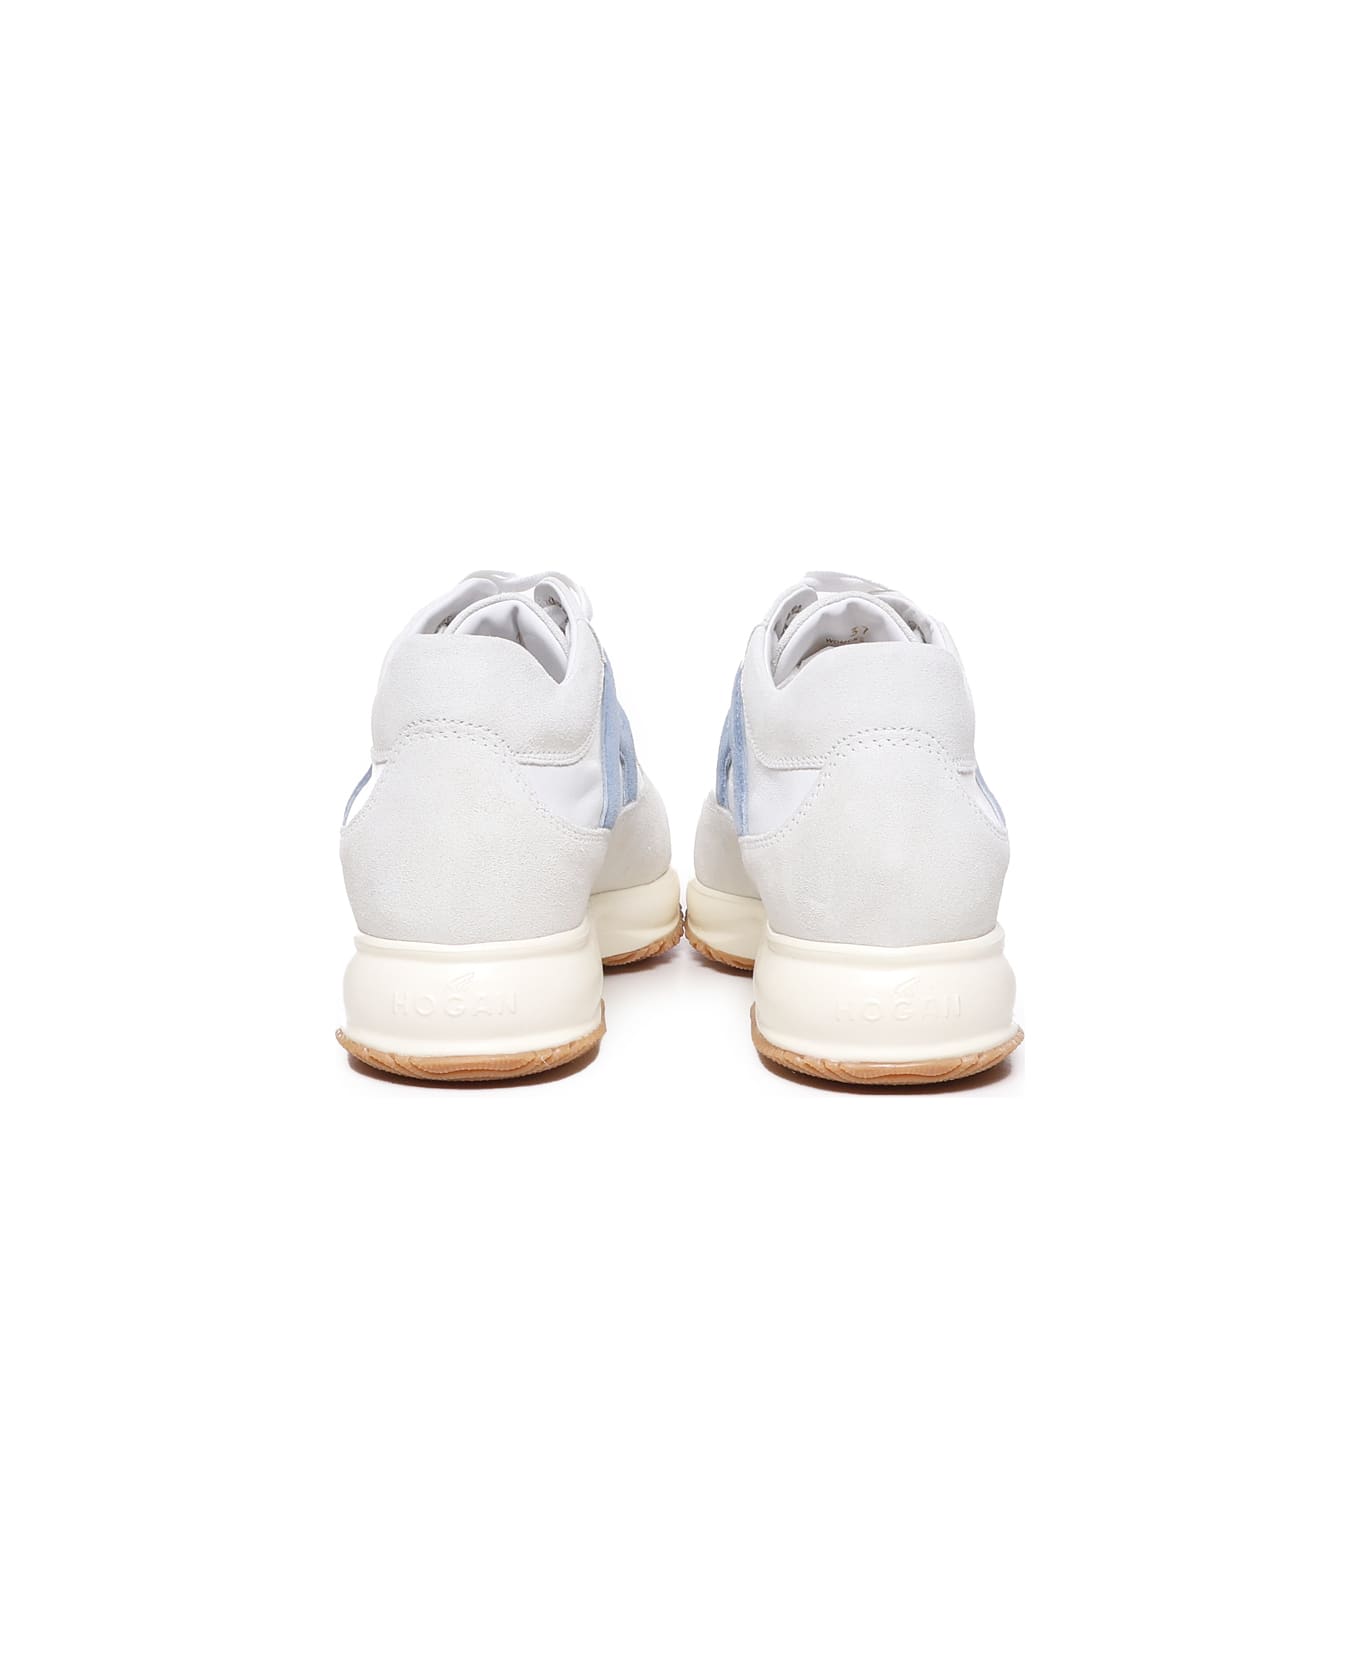 Hogan Sneakers - White, light blue スニーカー